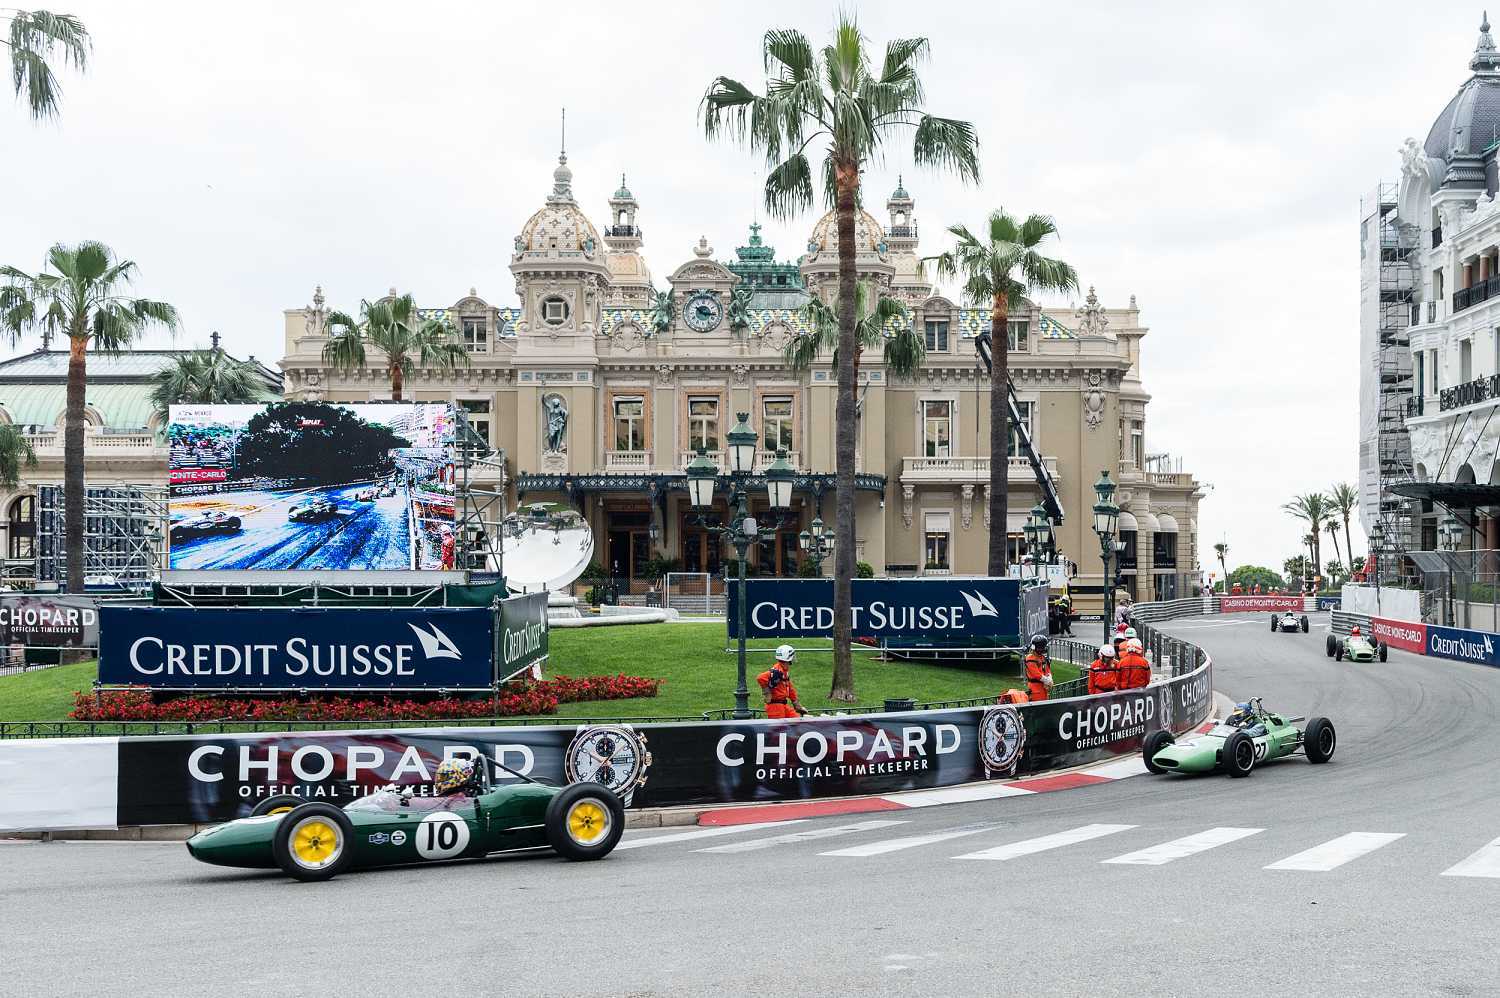 Chopard oficiální časomíra Grand Prix de Monaco 1 | Hodinky ženám 44